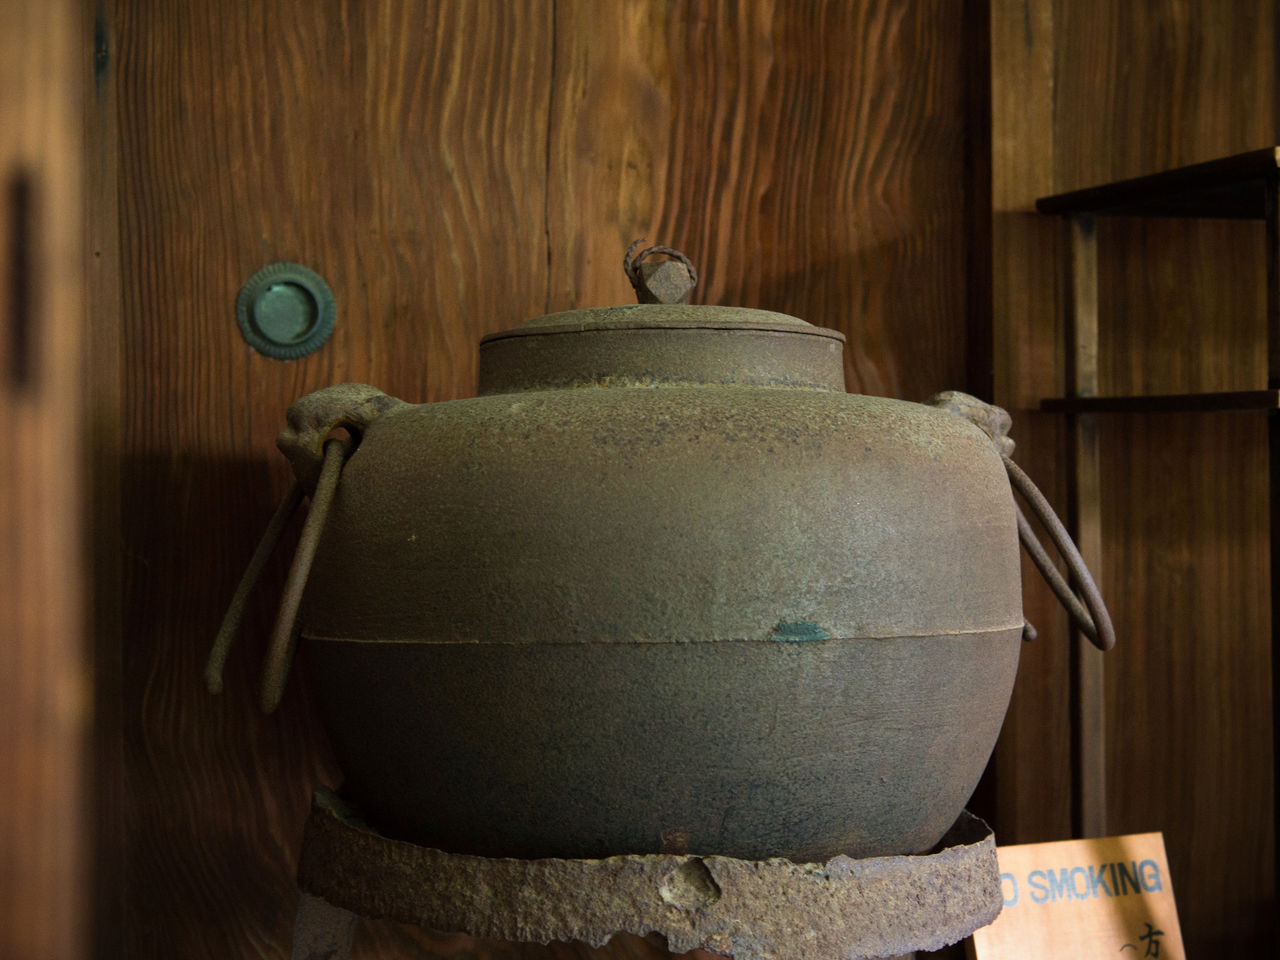 غلاية ماء يعتقد انها استخدمت في حفل شاي دايتوكوجي الذي أقامه هيديوشي عام 1585.